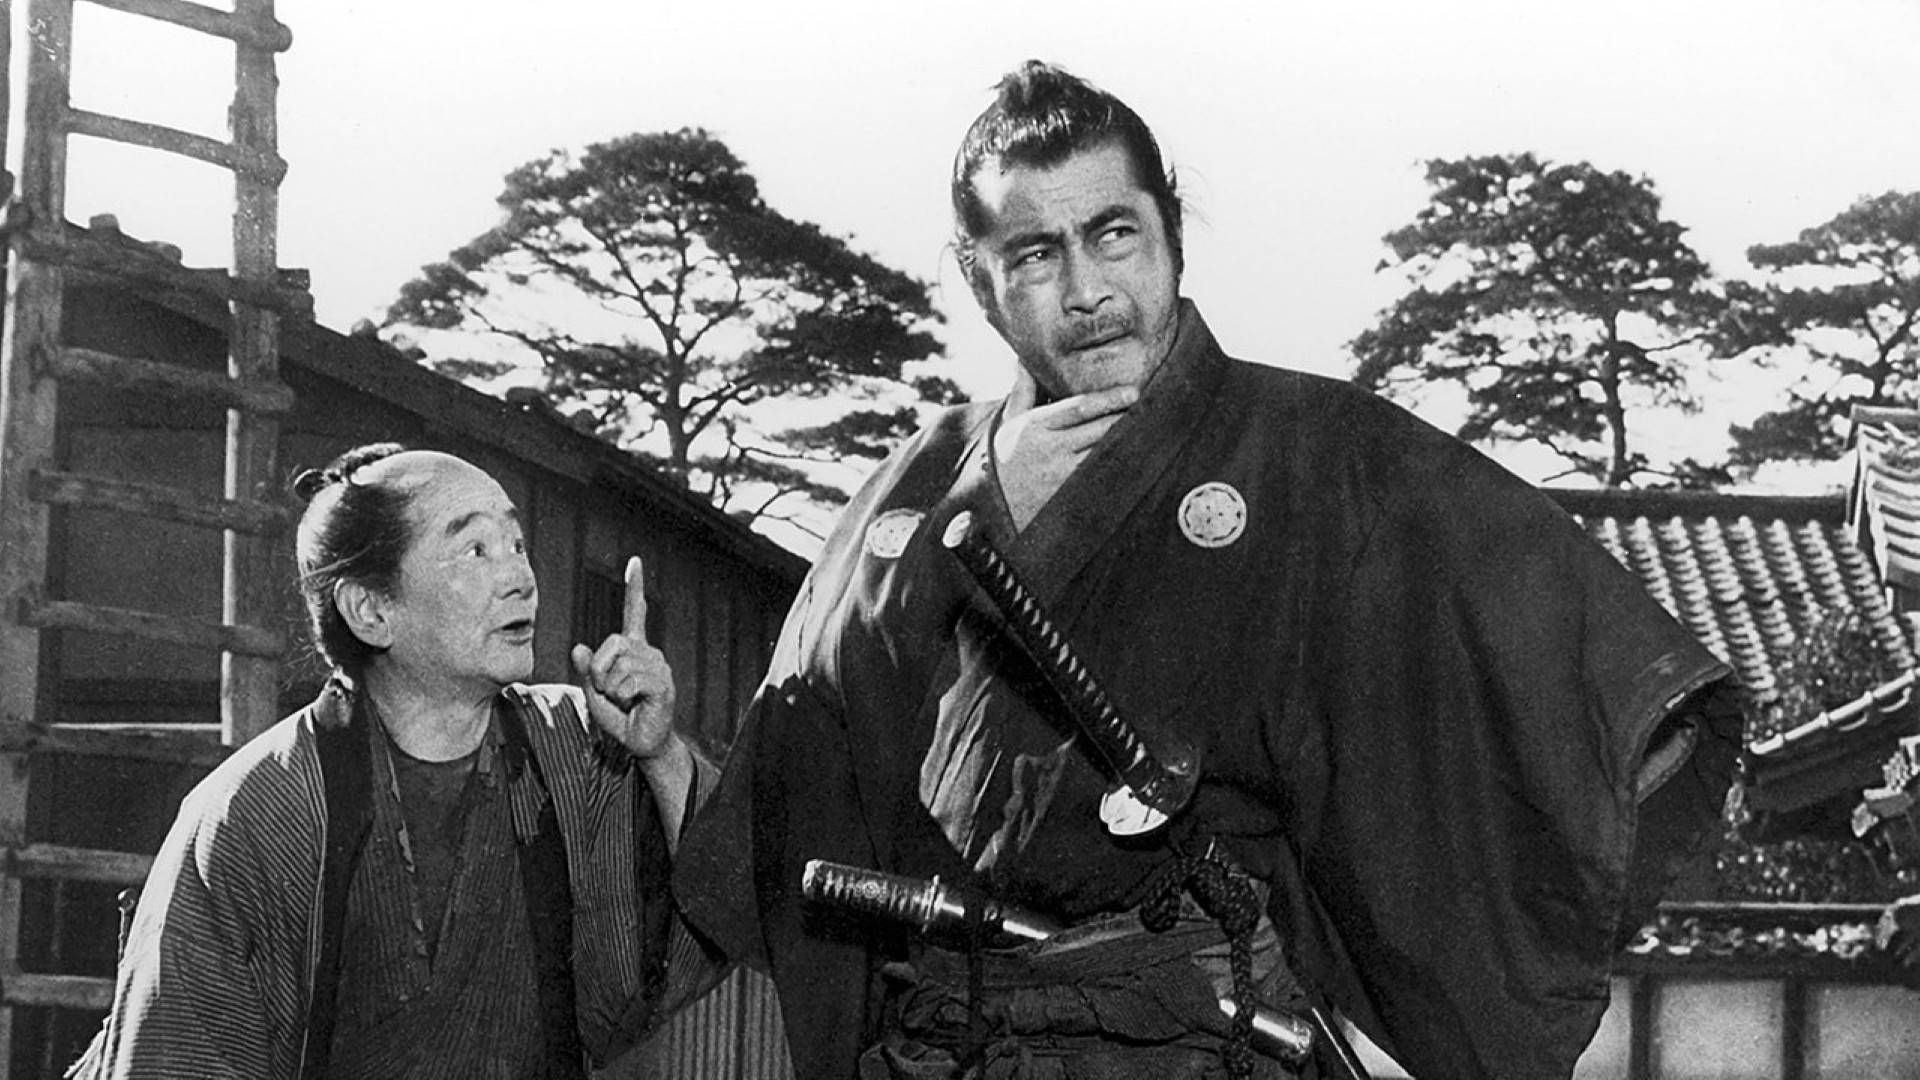 Цитата из к/ф «Телохранитель». реж. Акира Куросава. 1961.  Япония.